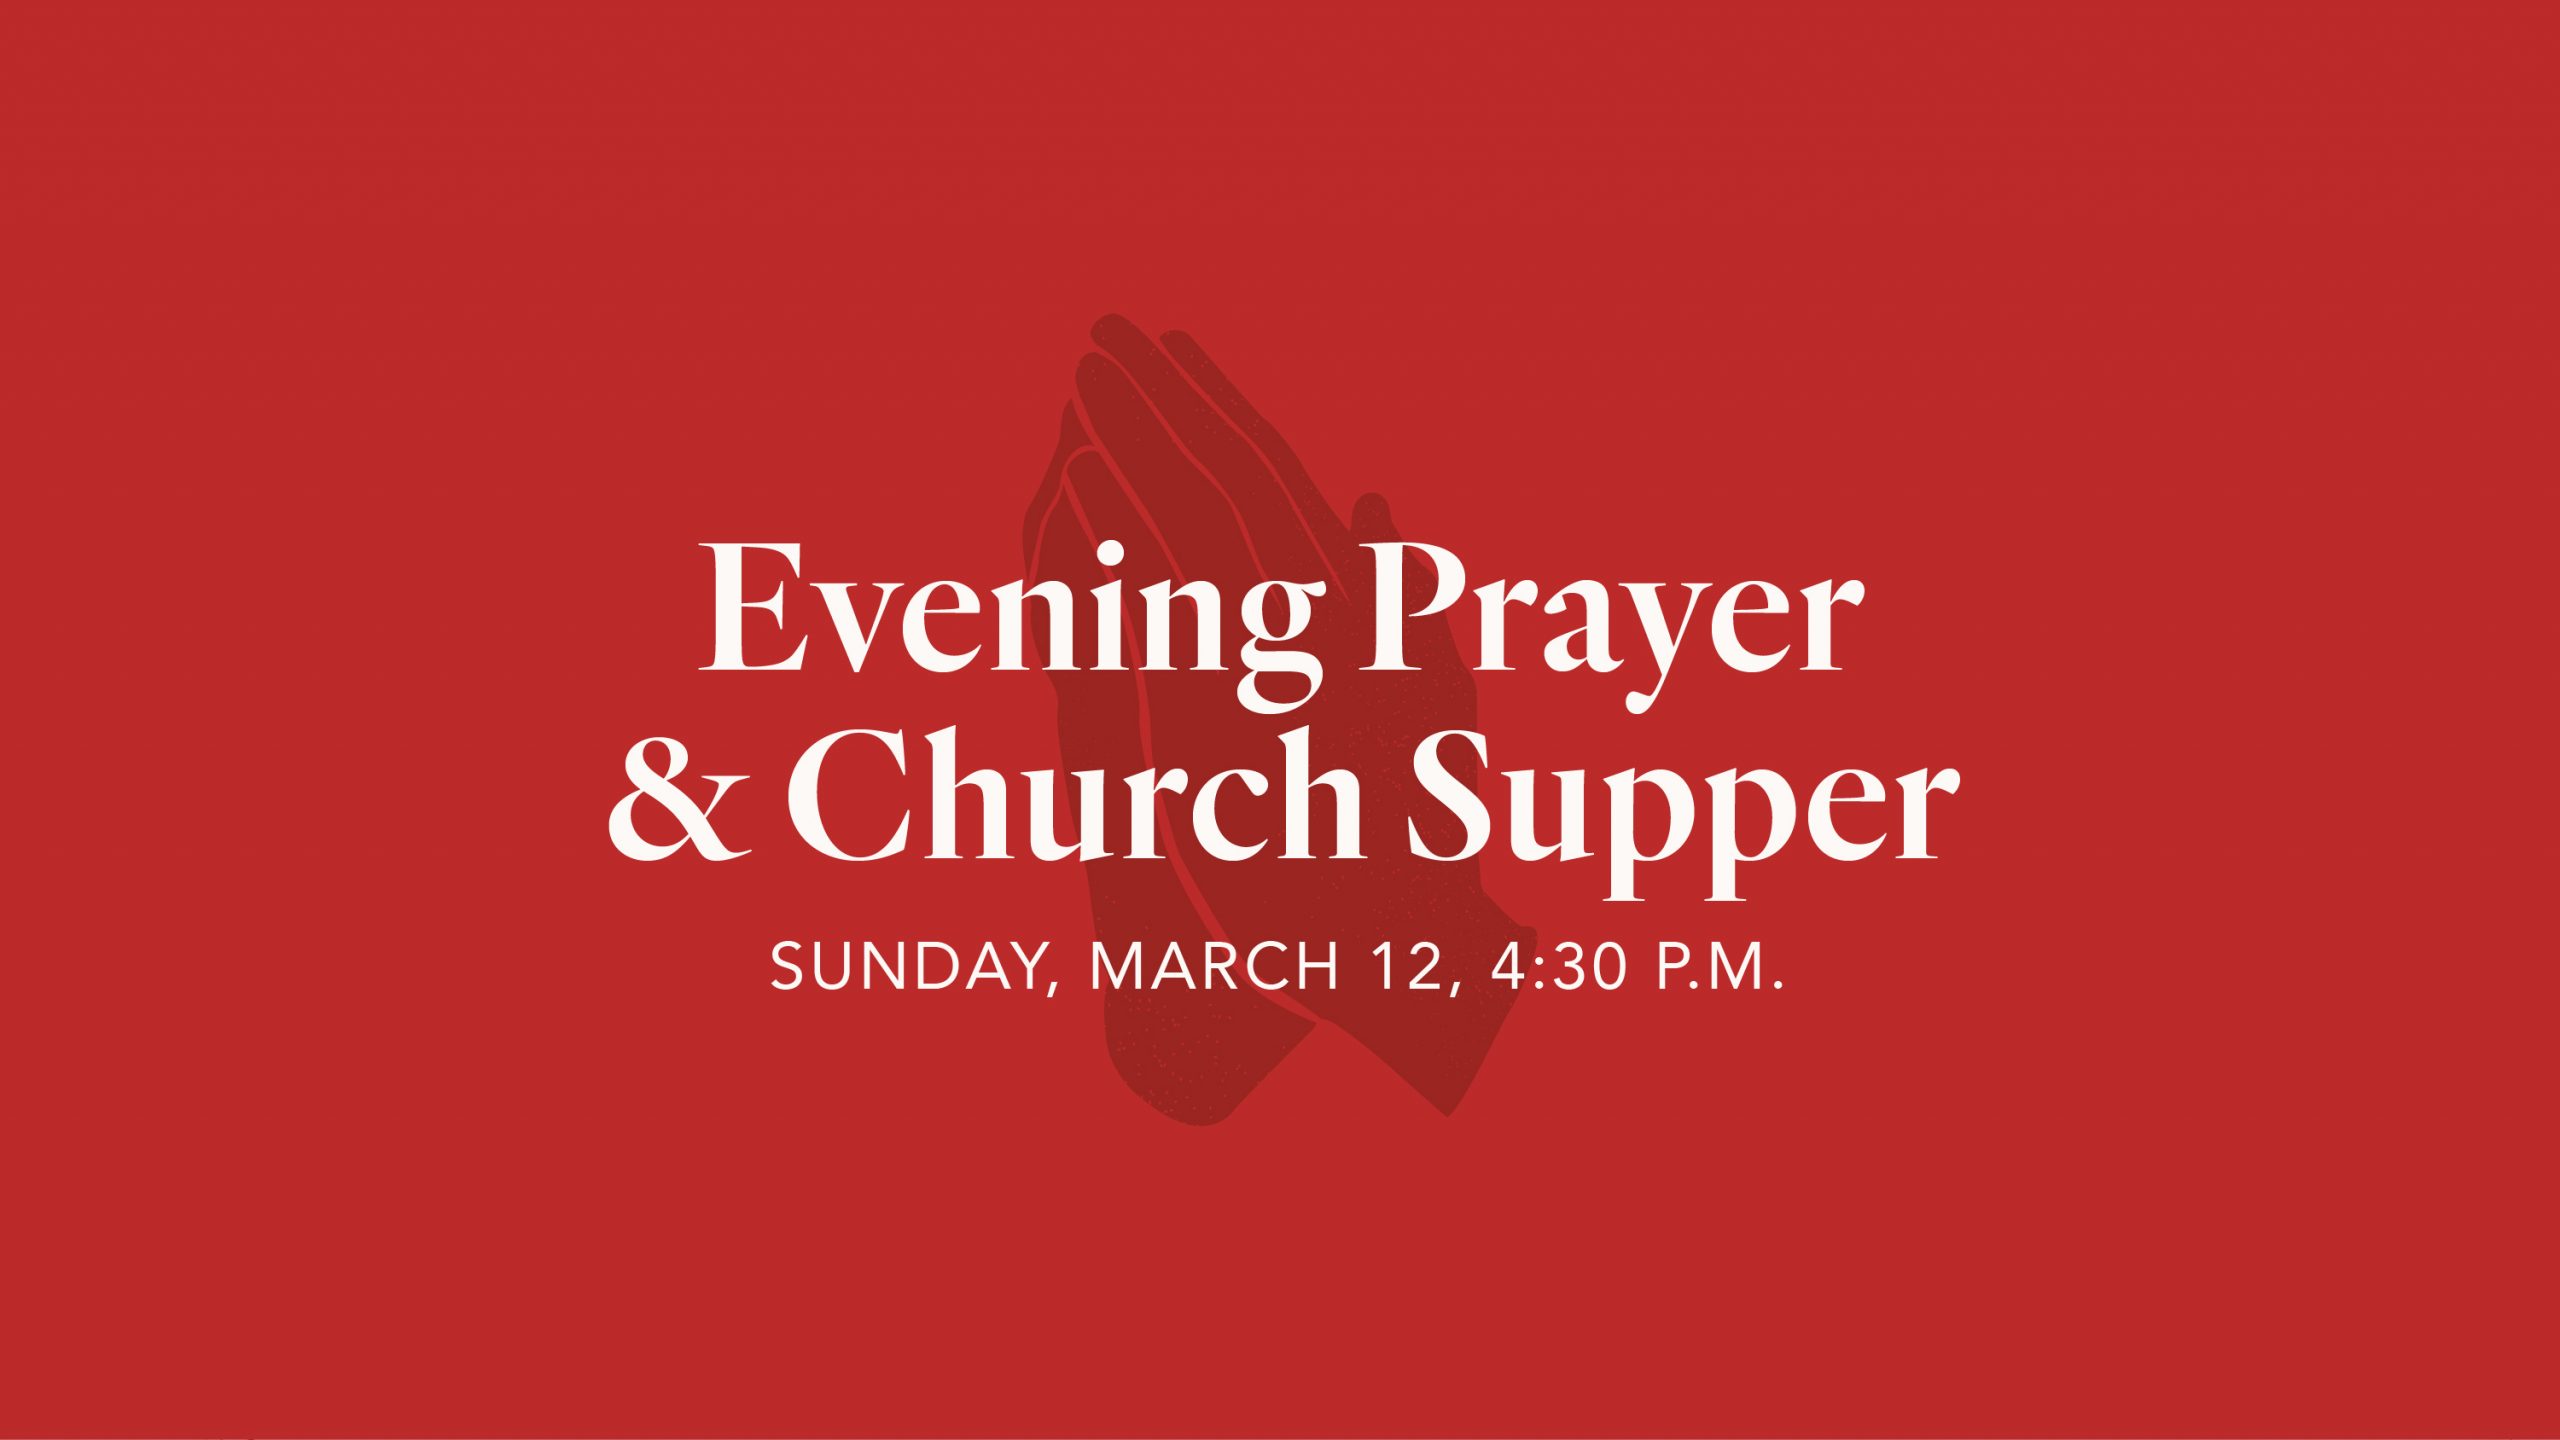 Evening Prayer & Church Supper